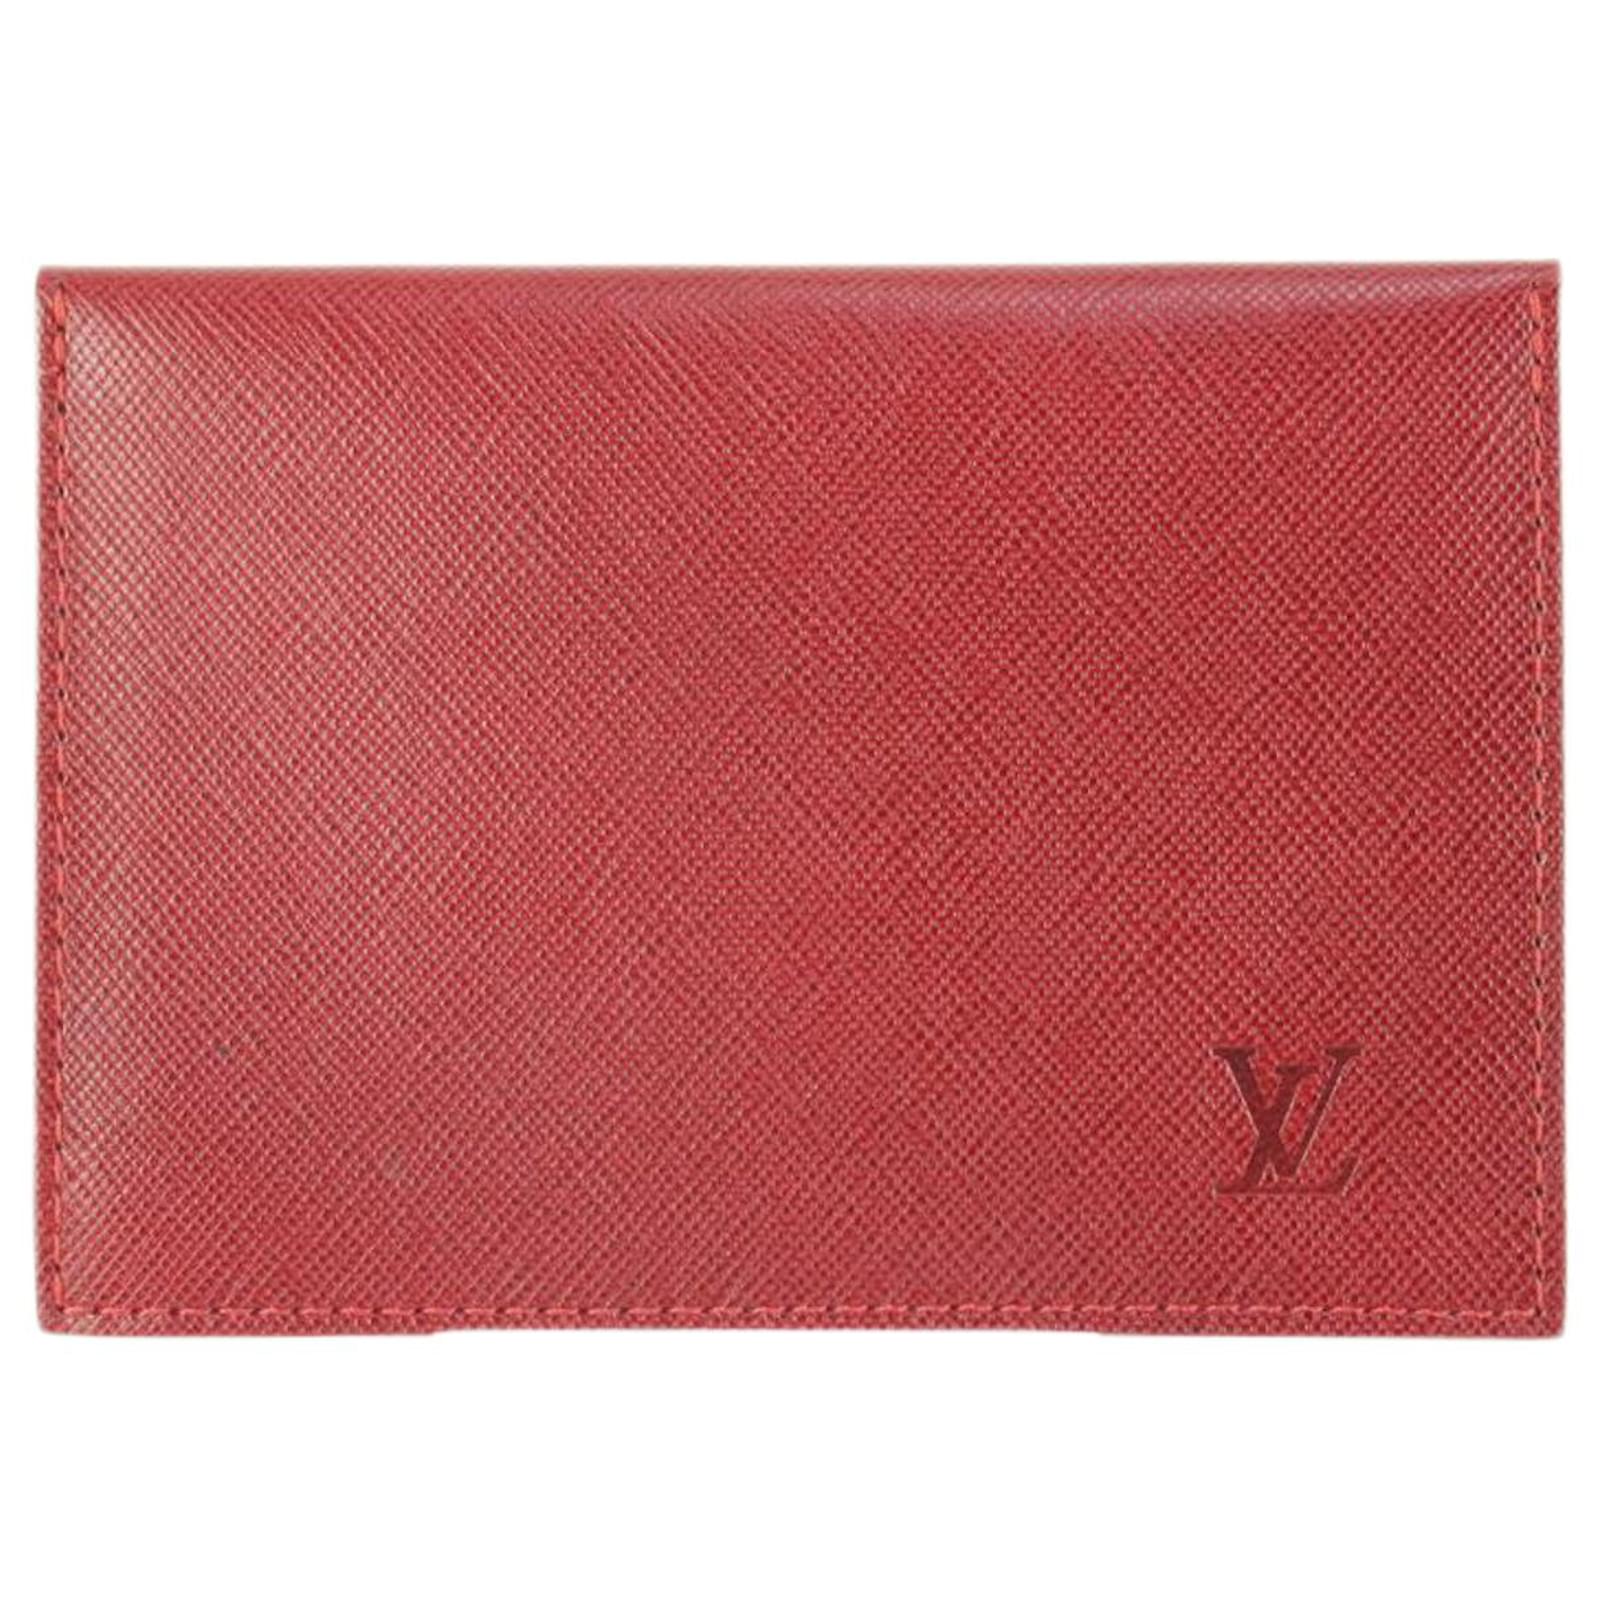 Louis Vuitton Recto Verso Kartenetui